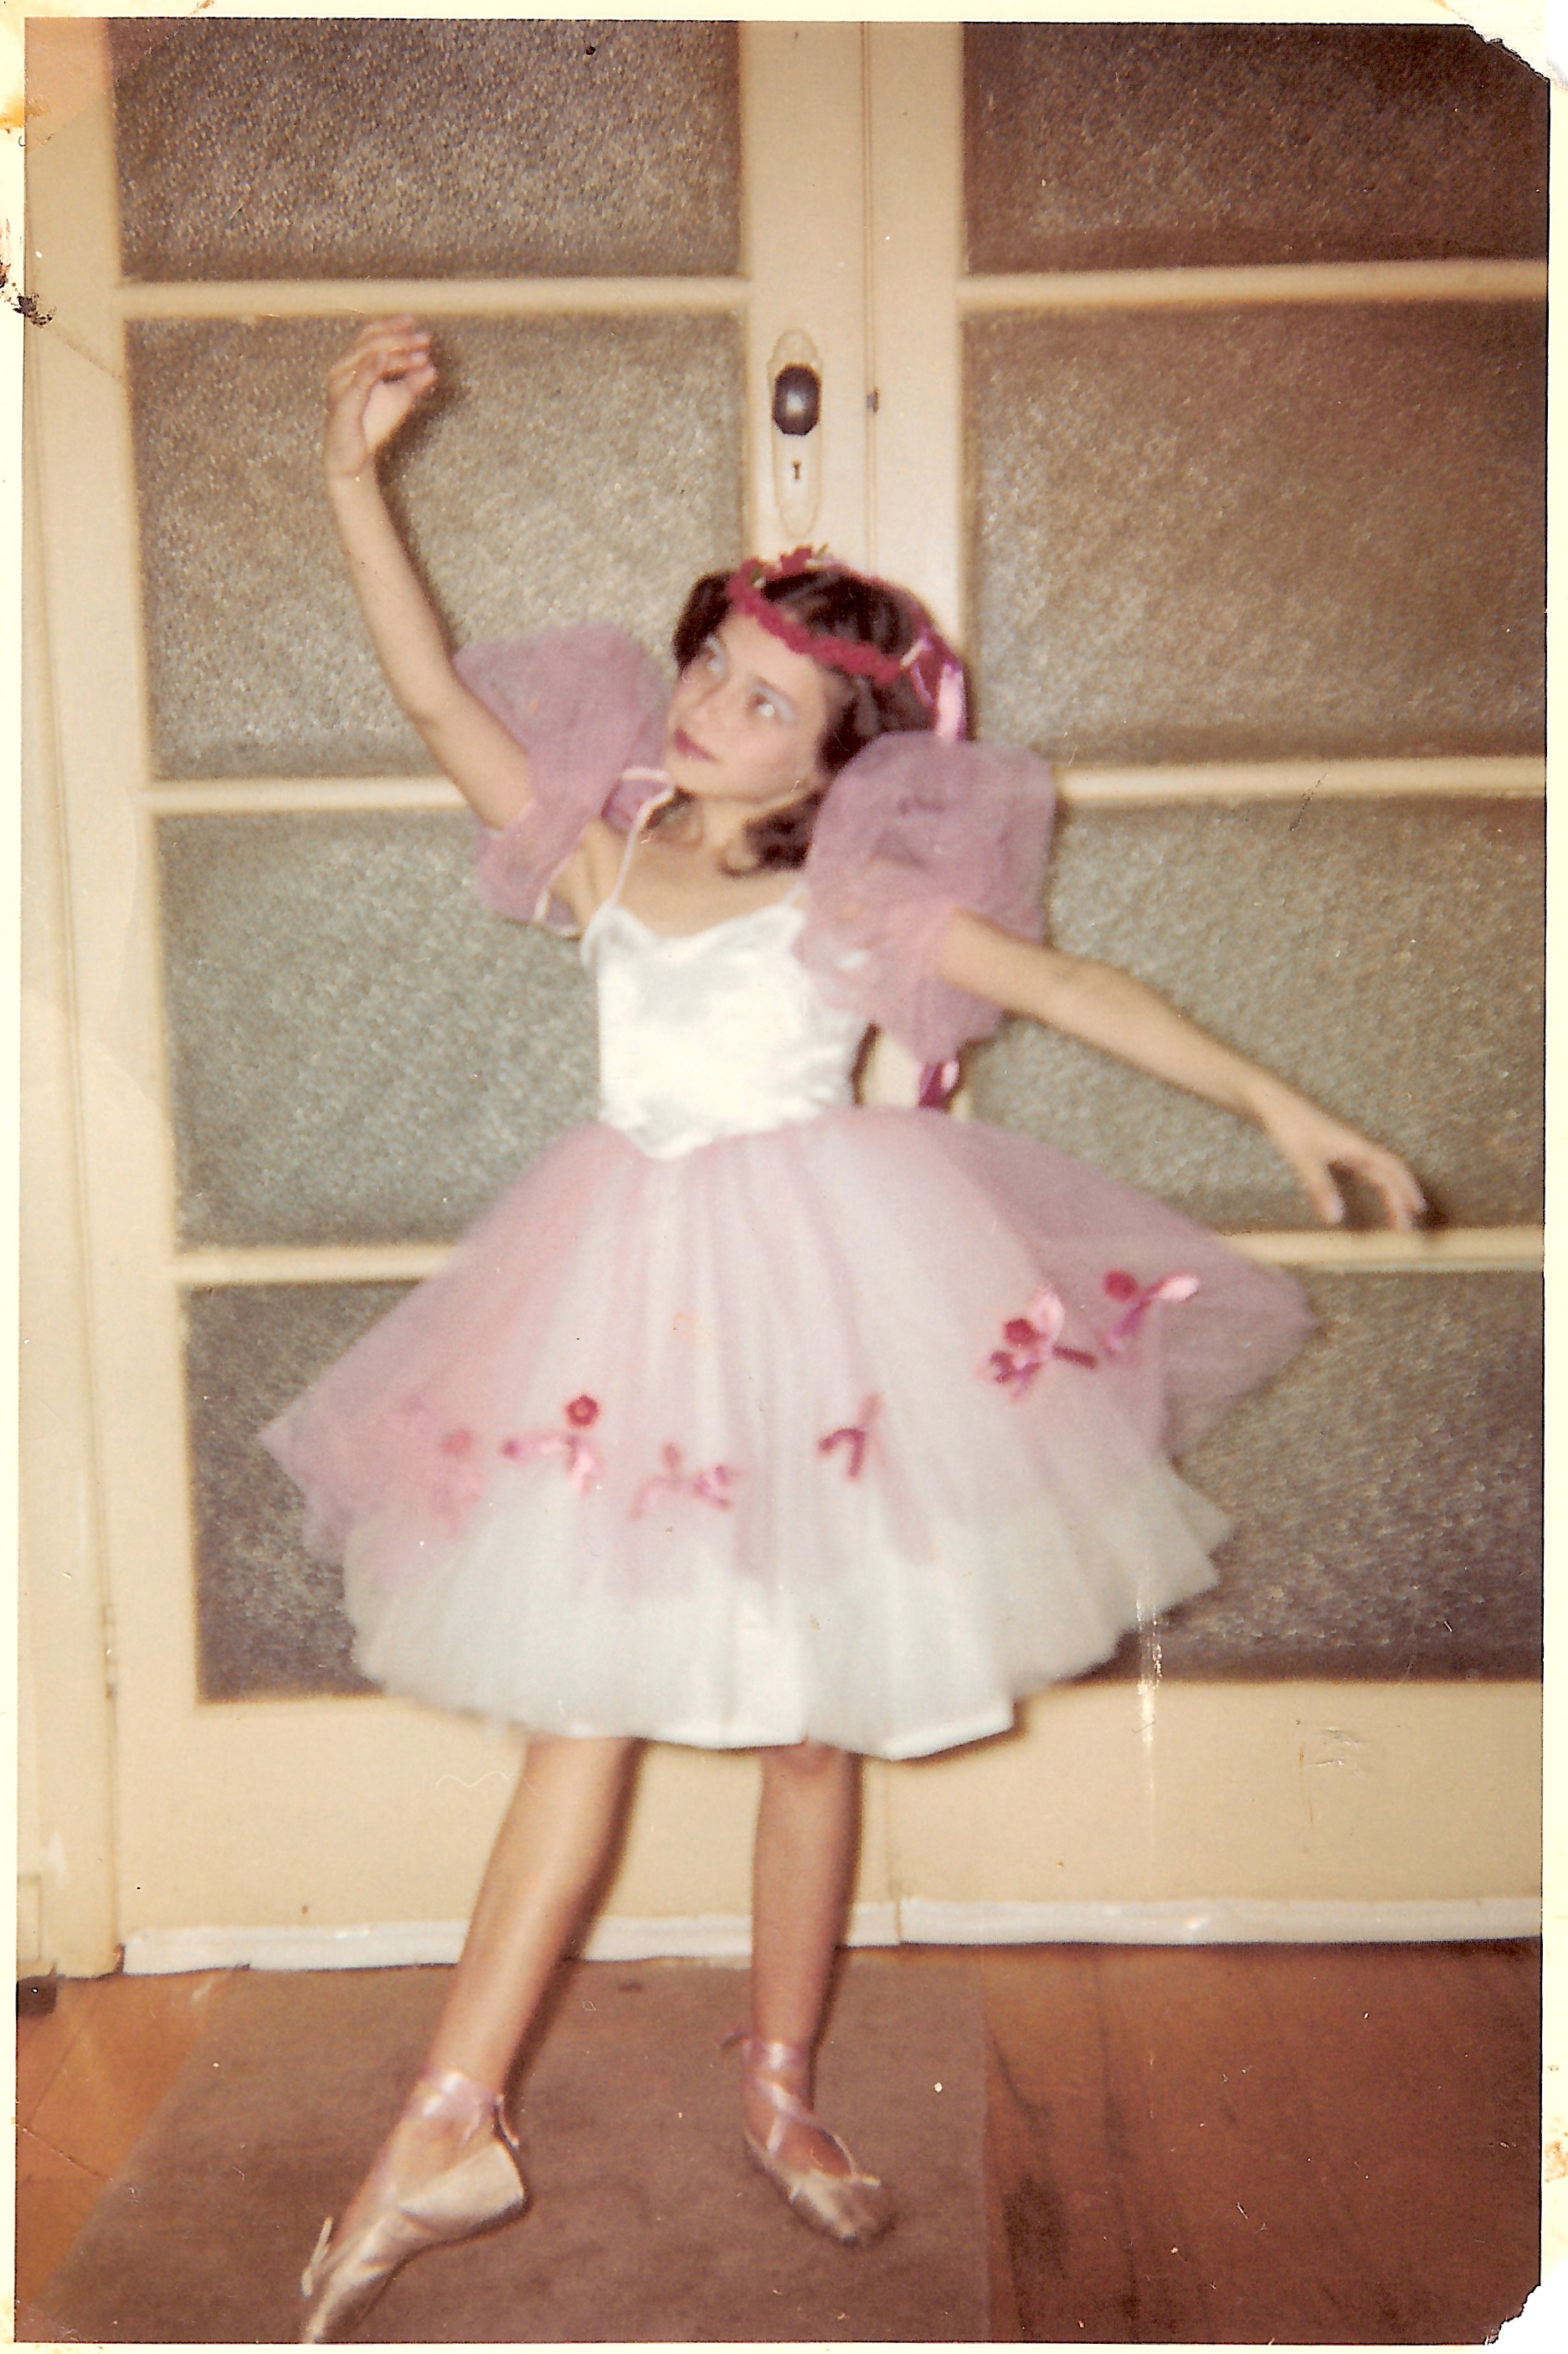 Aviva in her first ballet costume, 1961